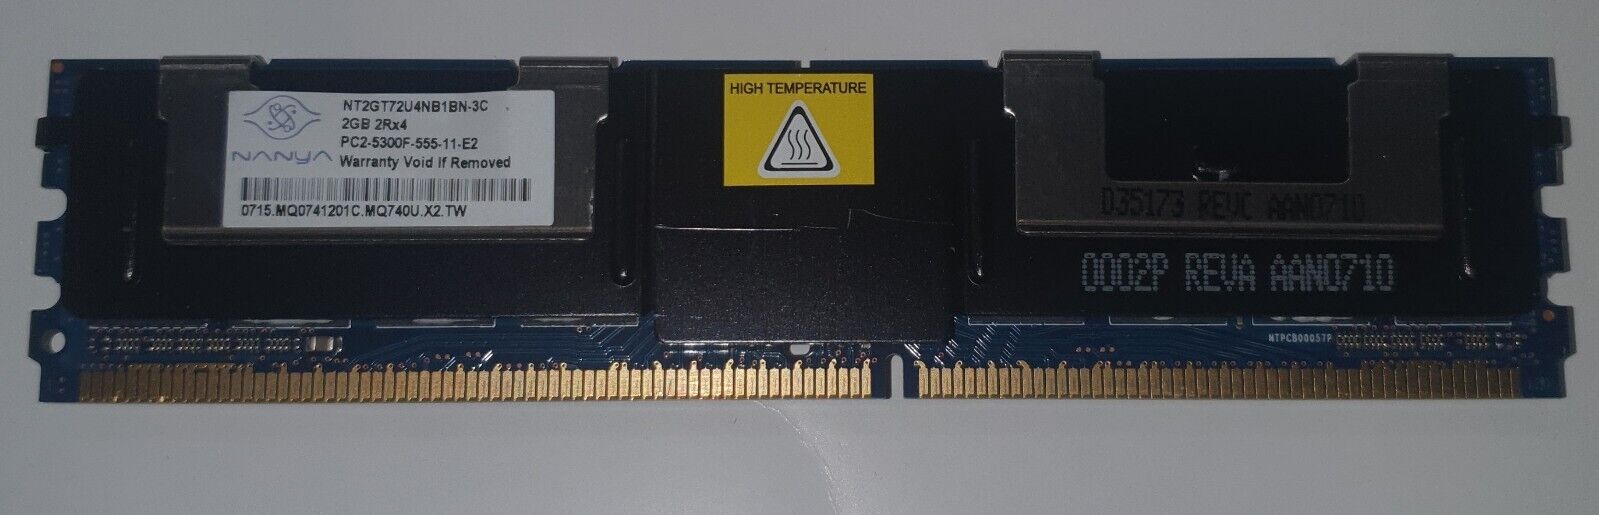 2GB DDR2 PC2-5300 667MHz 240pin ECC FB-DIMM Nanya NT2GT72U4NB1BN-3C Qty 14